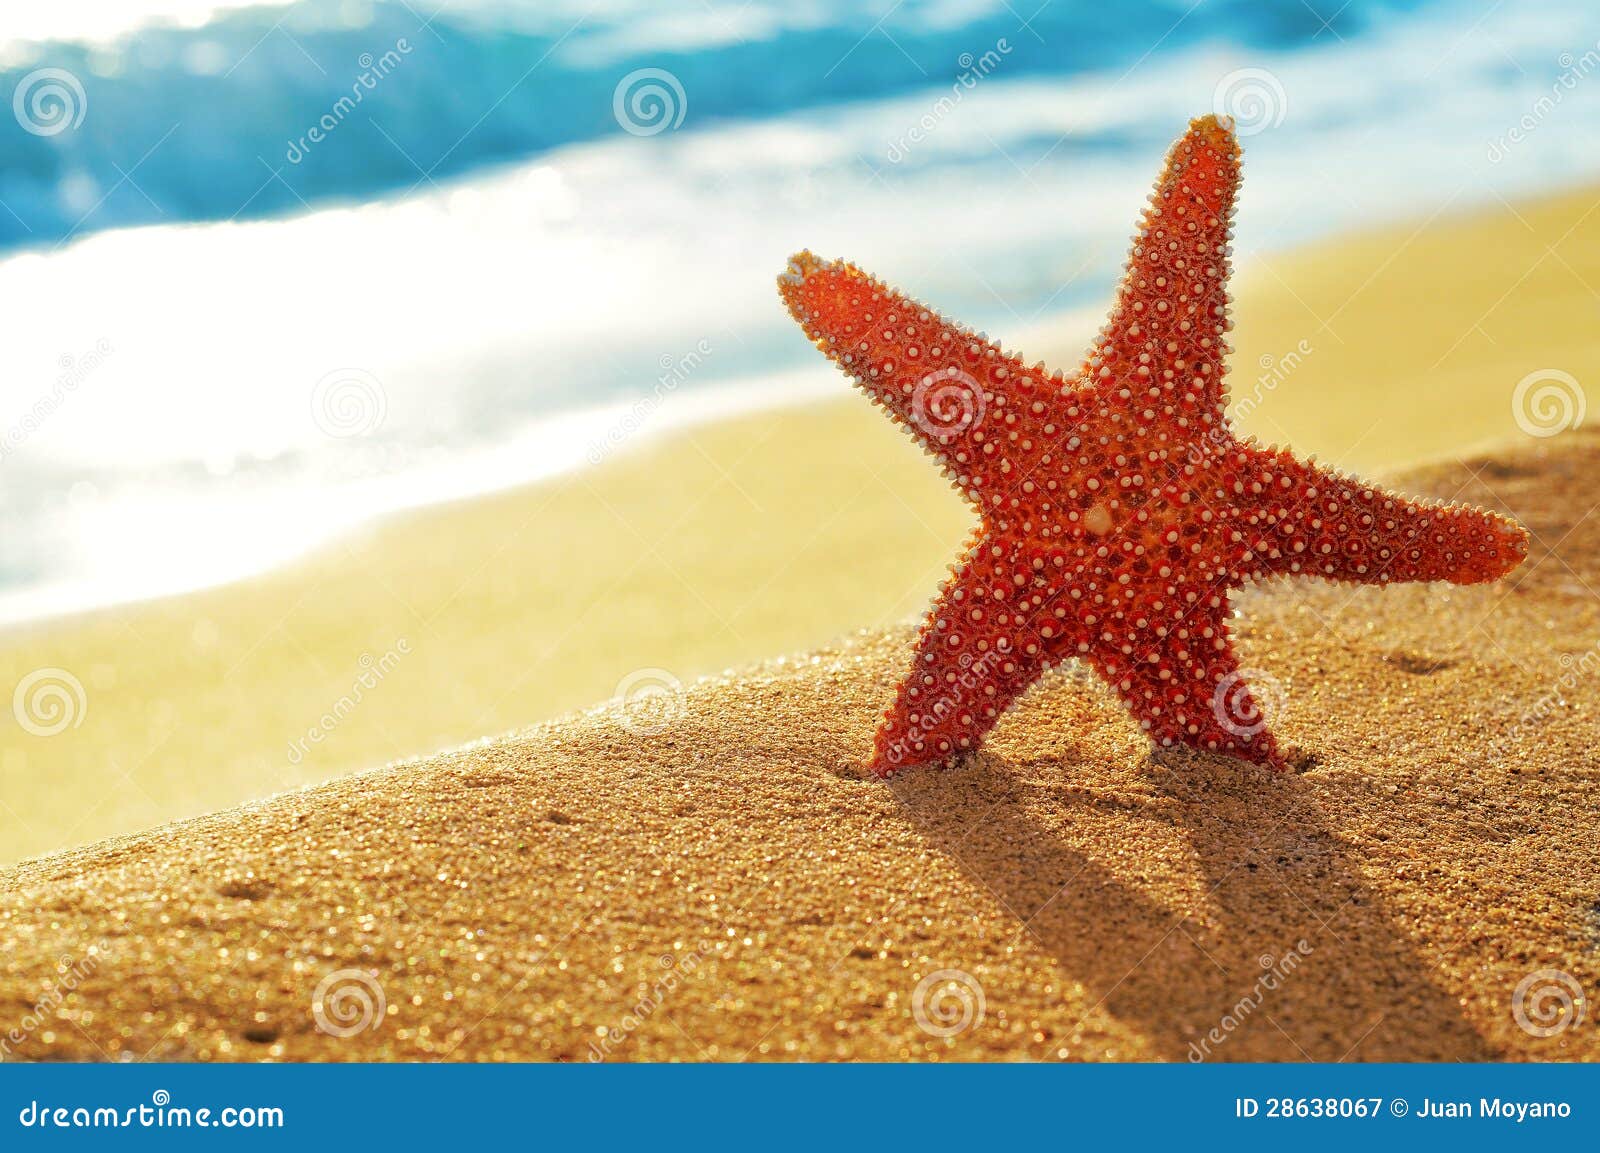 seastar on the sand of a beach